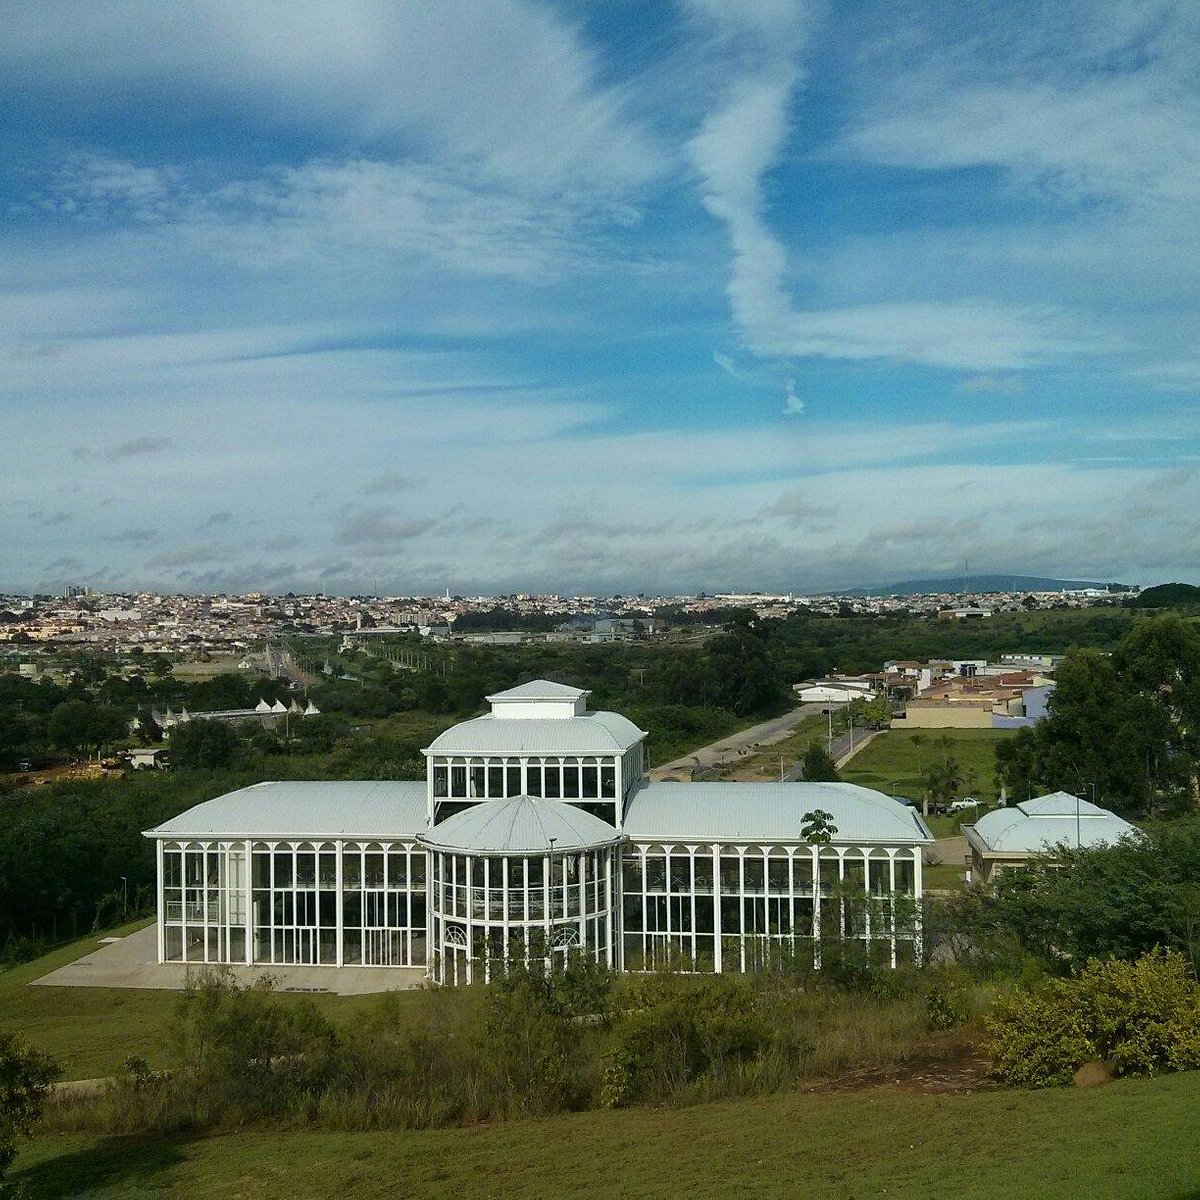 Jardim botanico Irmaos Vilas Boas - All You Need to Know BEFORE You Go  (with Photos)